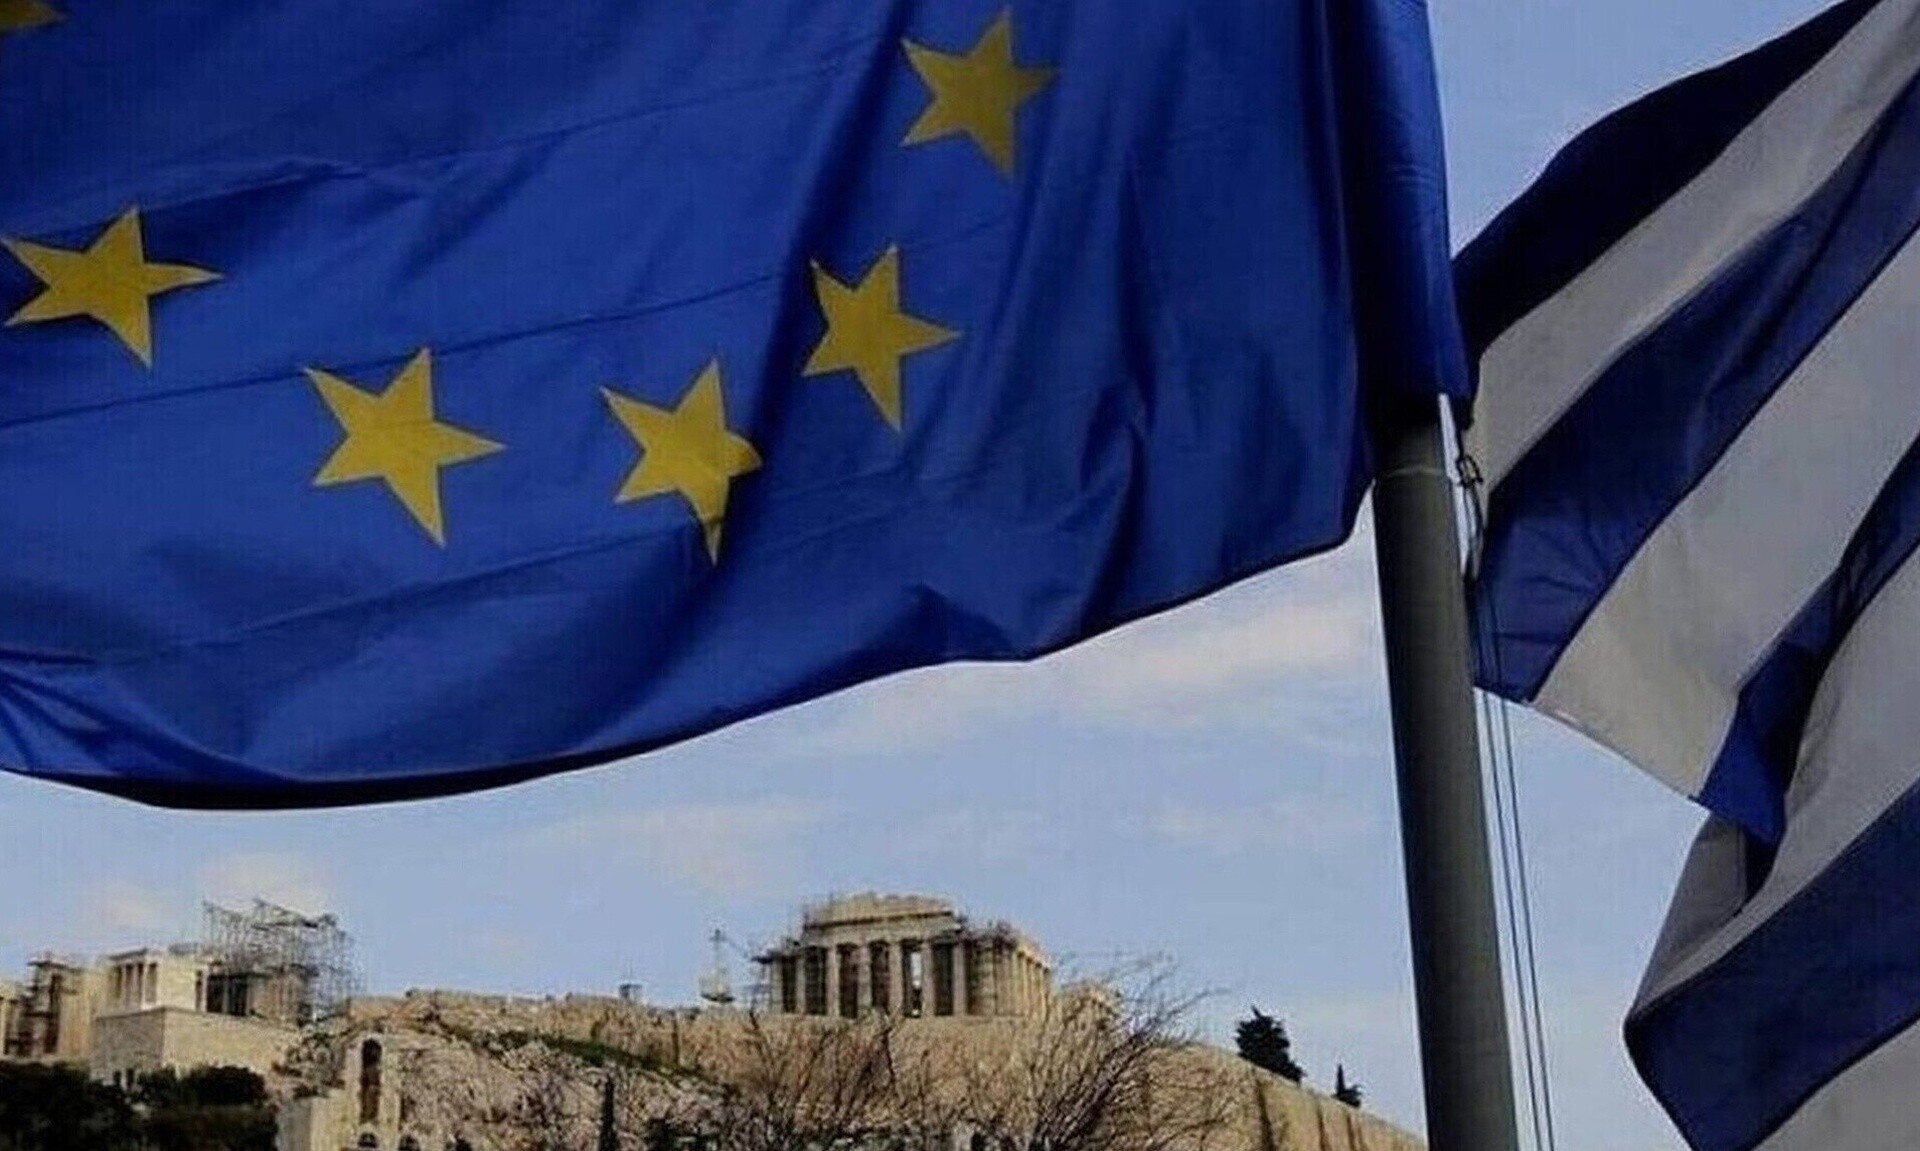 Ύμνοι από τους Times του Λονδίνου για την ελληνική οικονομία: Στάθηκε ξανά στα πόδια της